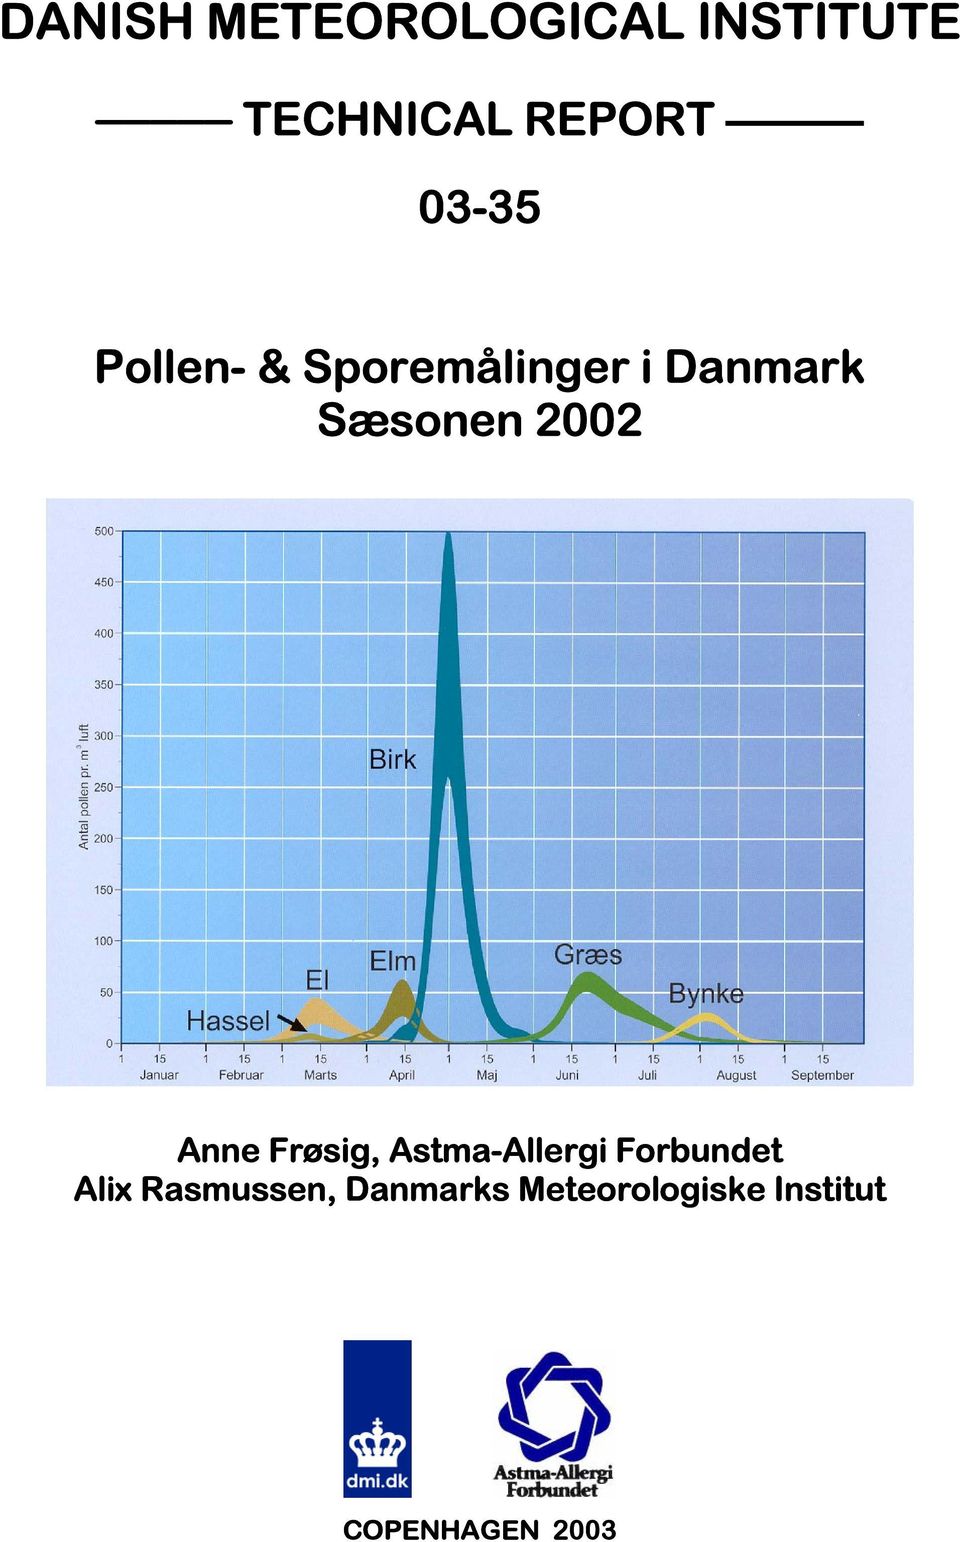 Anne Frøsig, Astma-Allergi Forbundet Alix